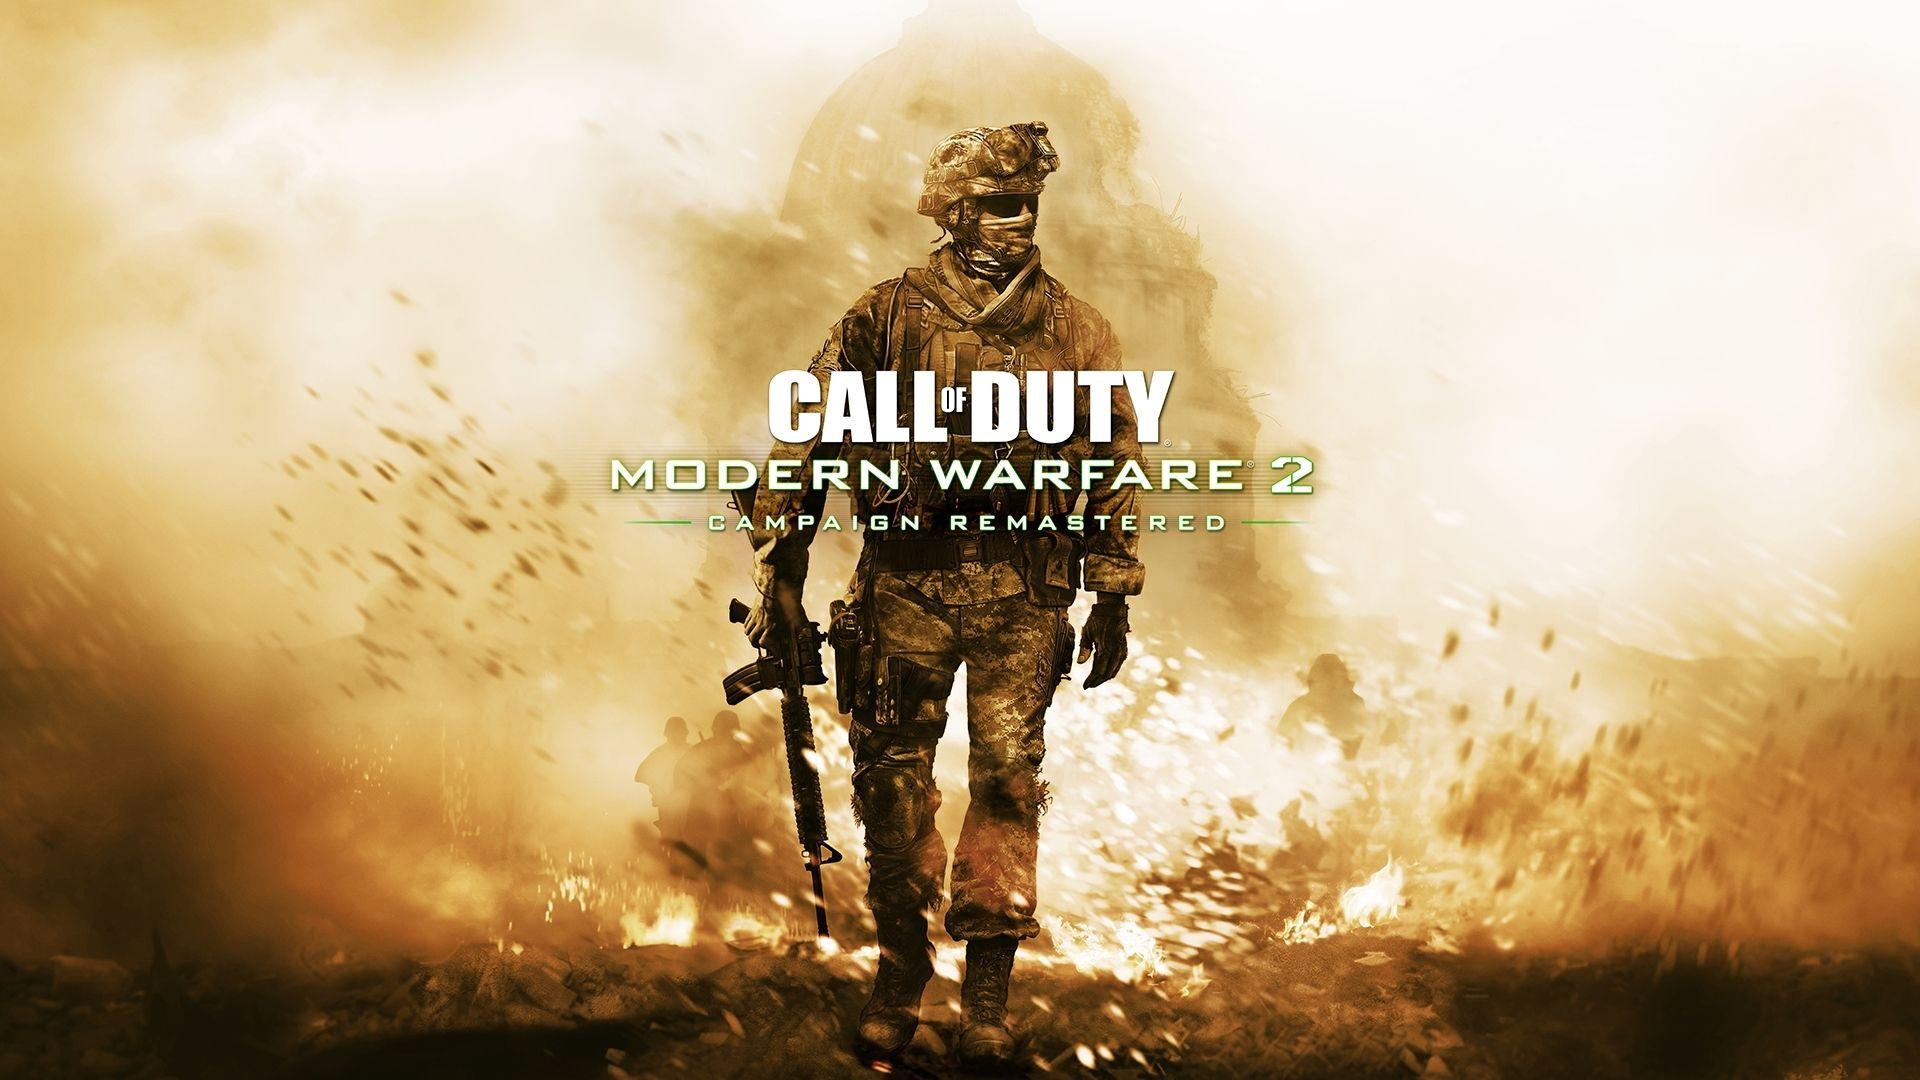 1920x1080 Call of Duty Modern Warfare 2 Campaign Remastered Wallpaper, HD Games Hình nền 4K, Hình ảnh, Hình ảnh và Nền